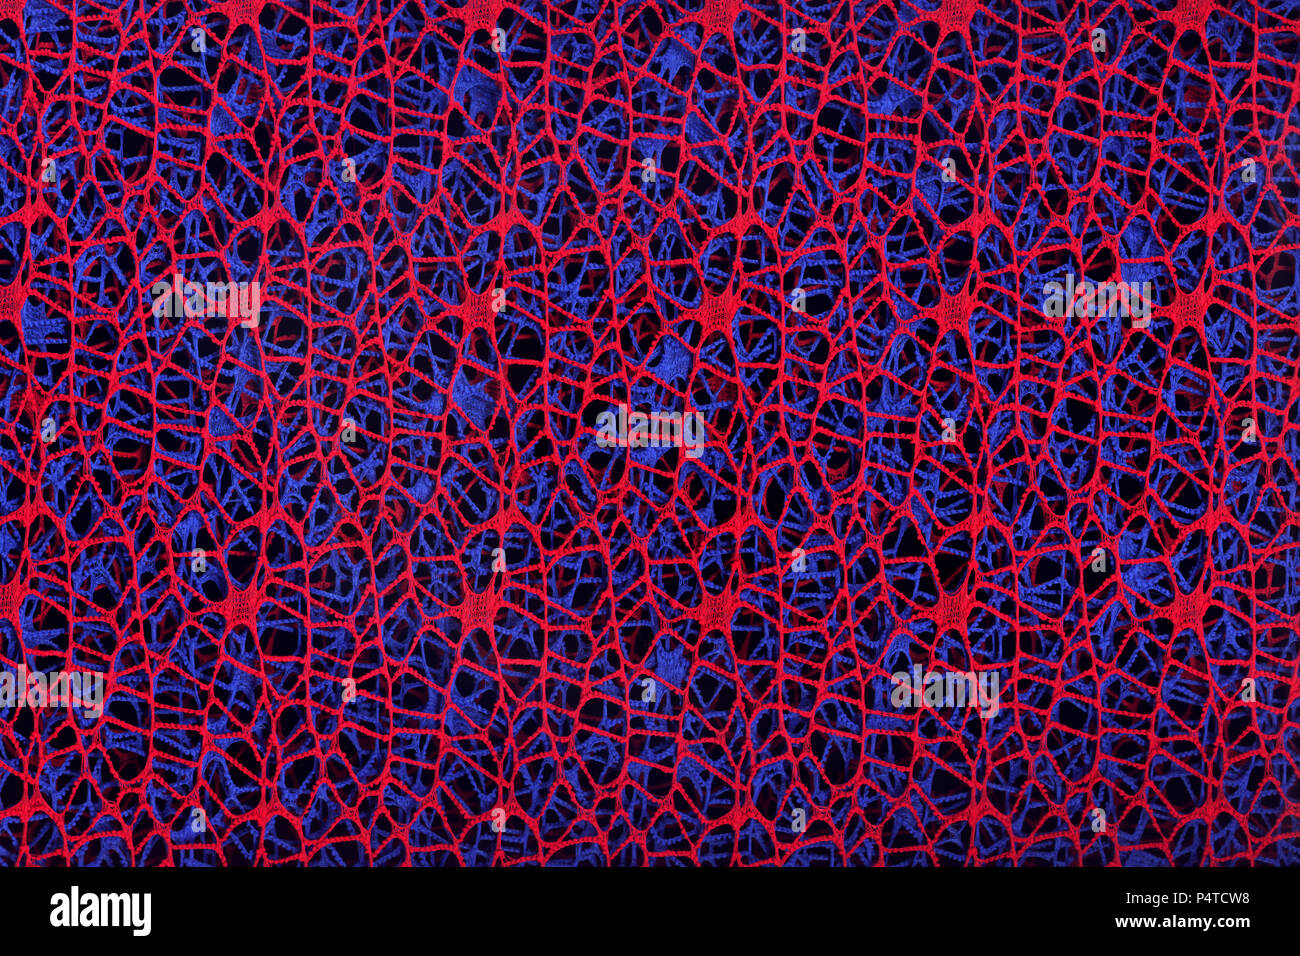 Zusammenfassung Hintergrund aus Gewebe aus roten und blauen Threads auf einem schwarzen Hintergrund. Stockfoto